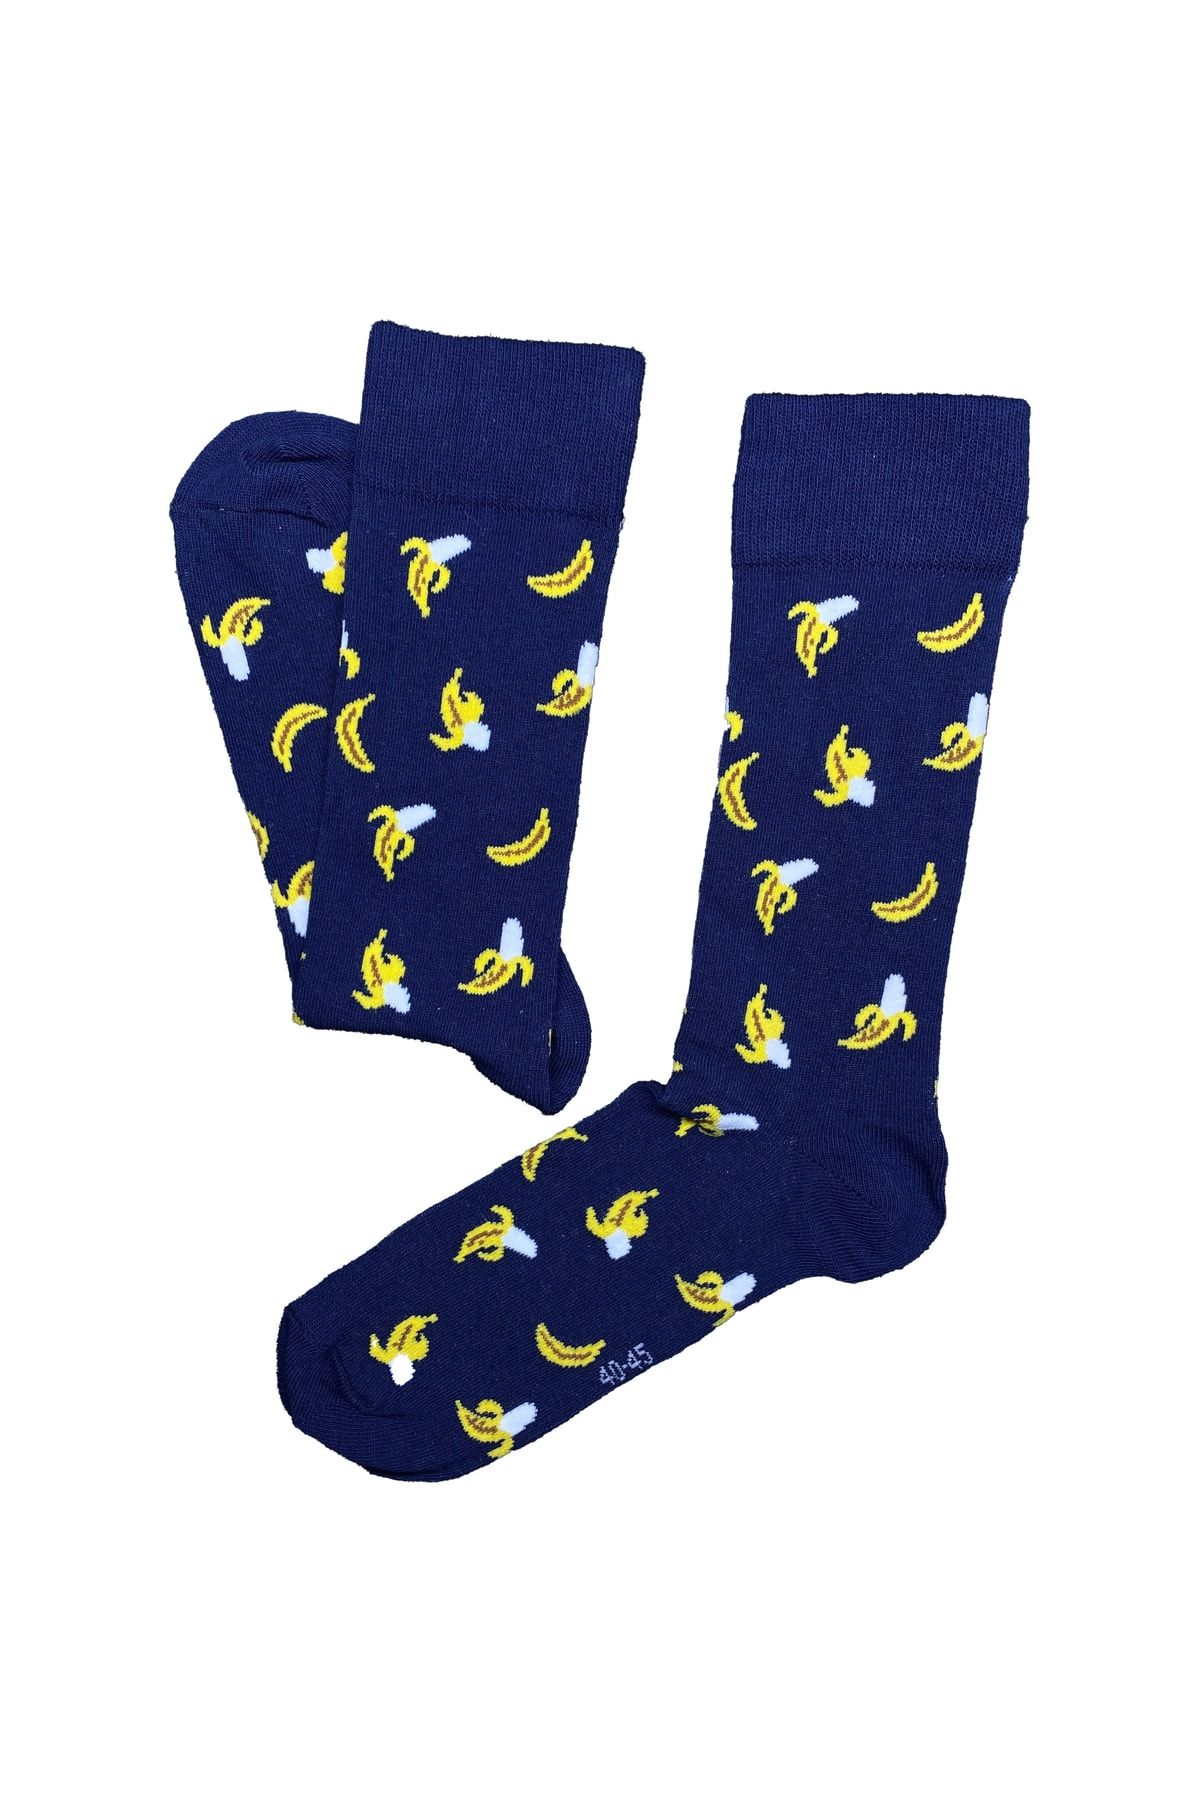 Unisocks Erkek Soket Çorap Lacivert Renk Muz Desenli Kışlık Çorap